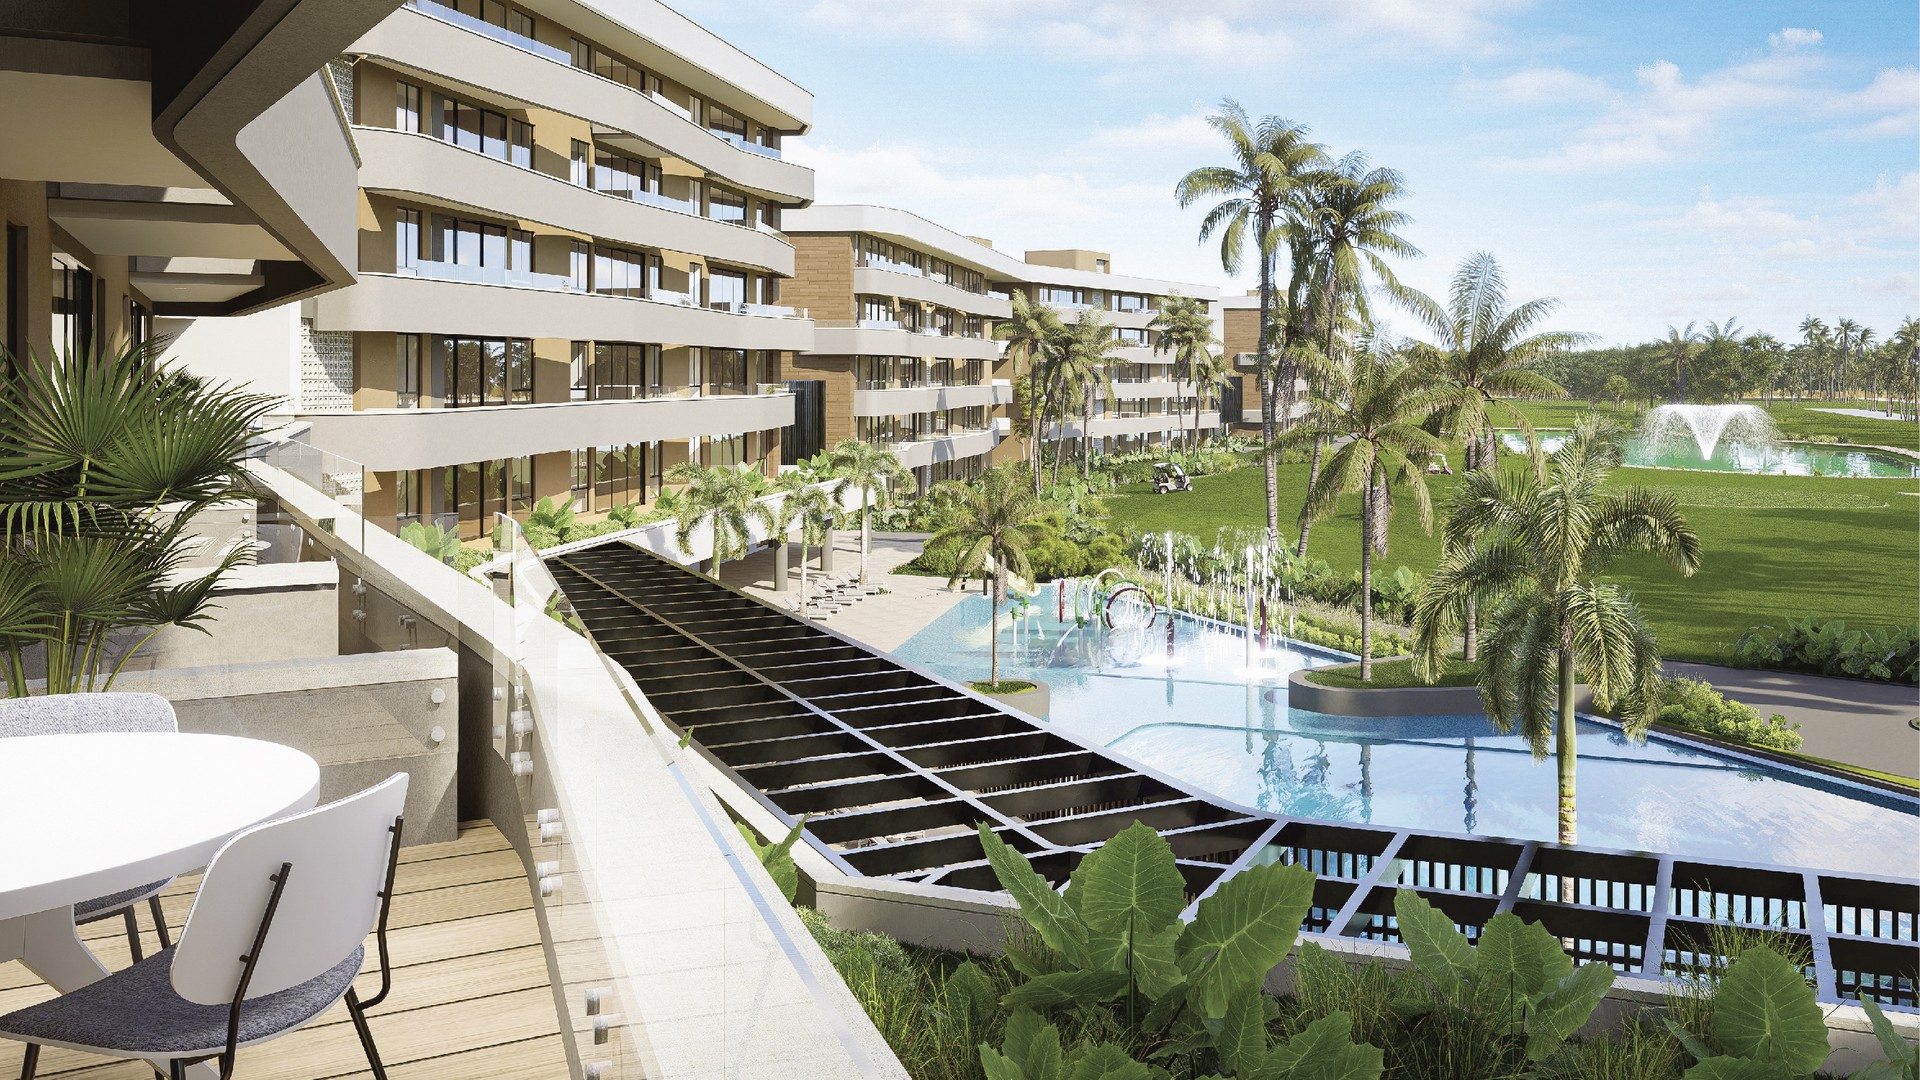 apartamentos - Venta de apartamentos en bávaro Punta cana con Club de Playa y campo de golf. 3